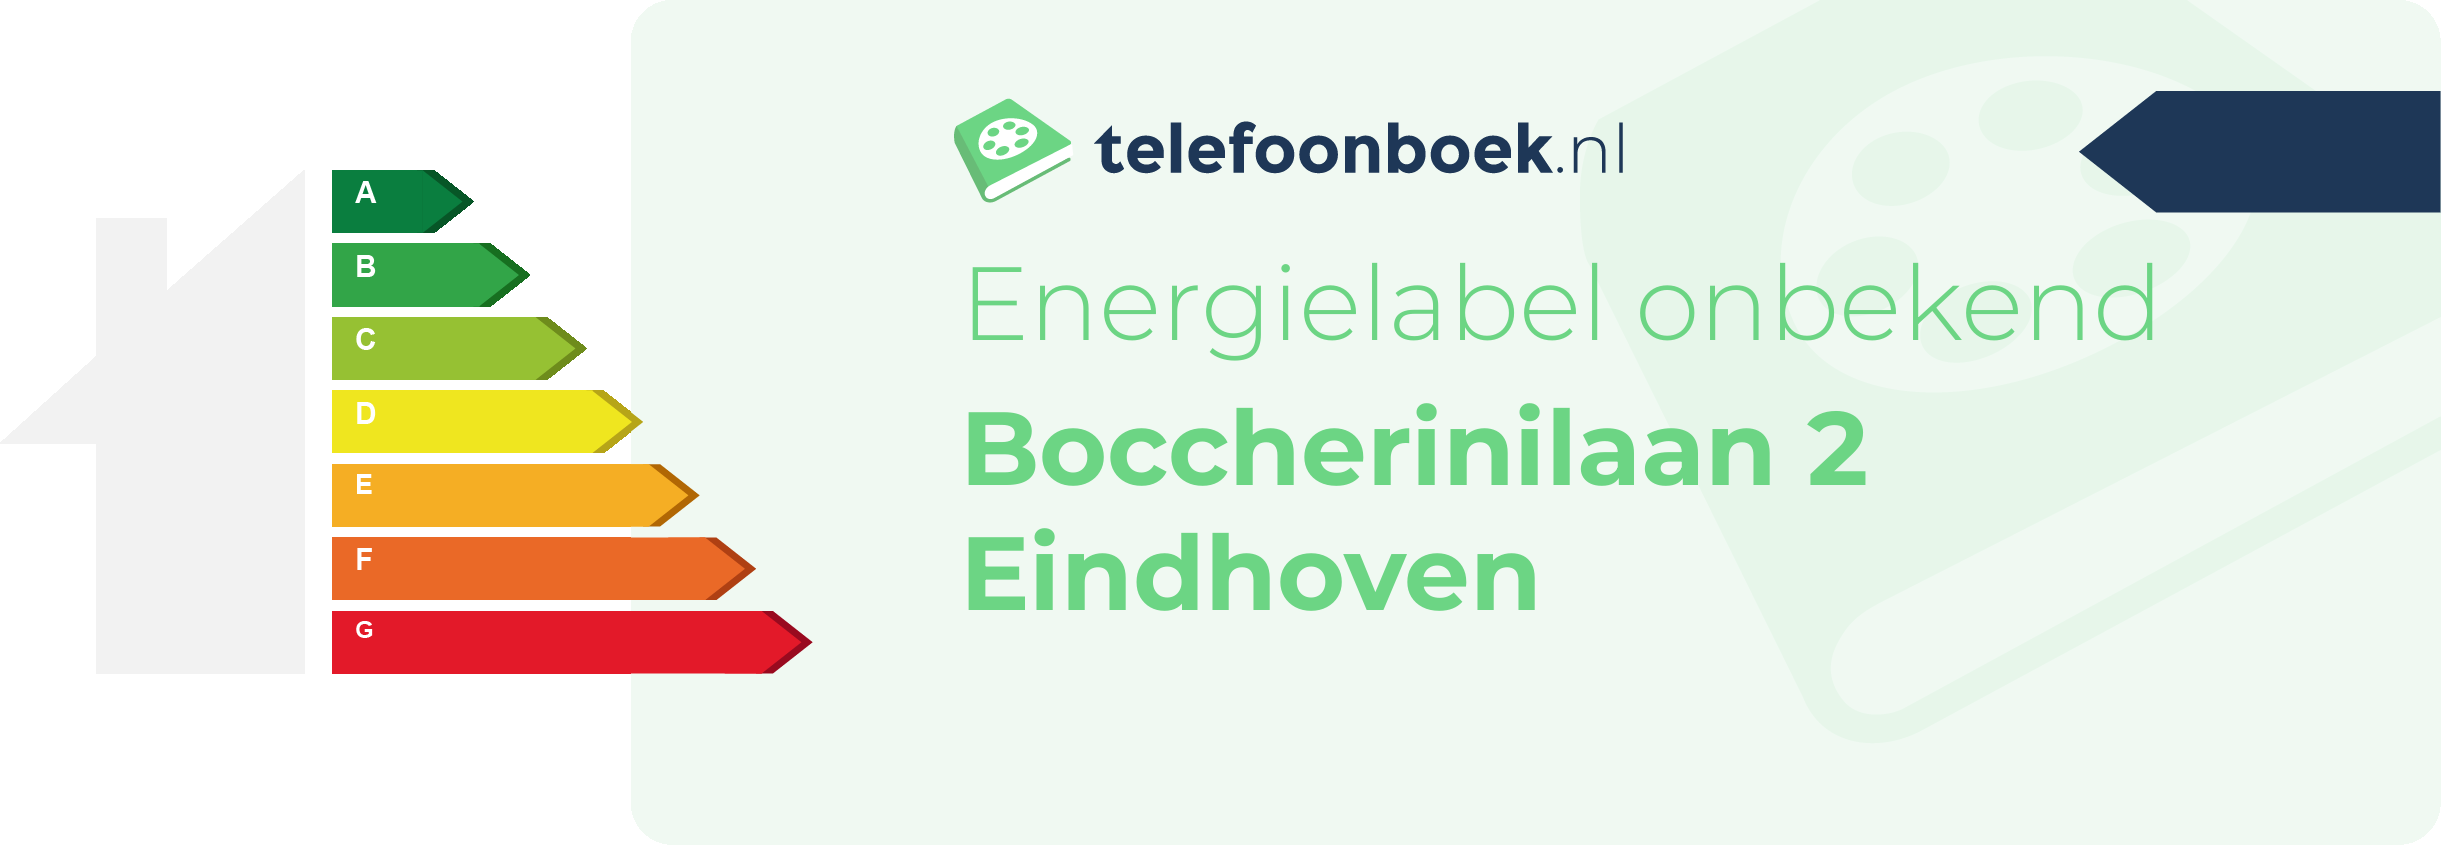 Energielabel Boccherinilaan 2 Eindhoven